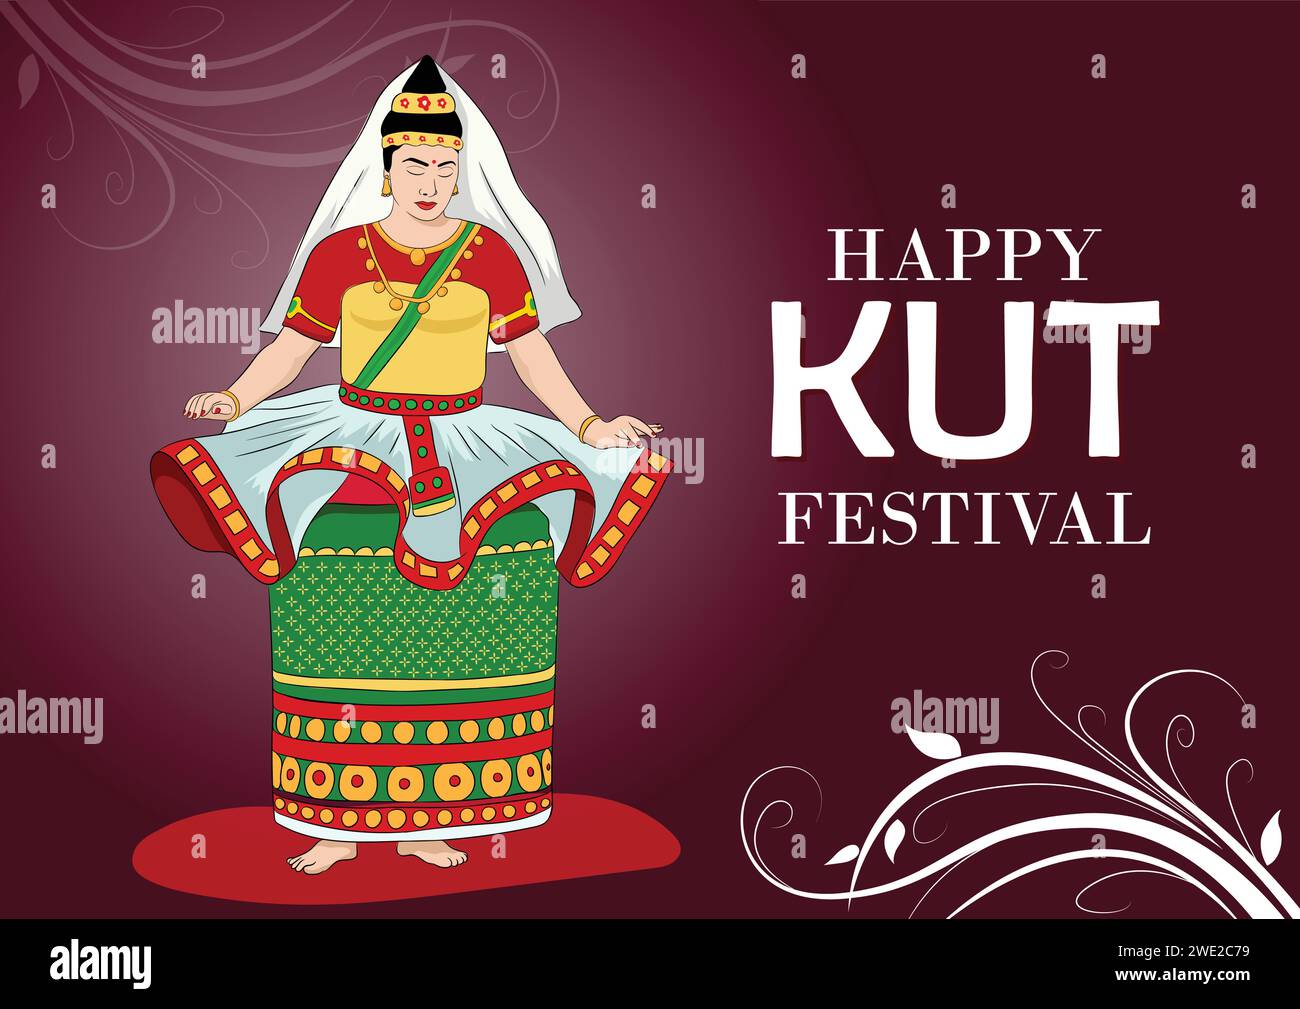 Affiche d'illustration vectorielle du festival Chapchar Kut sur fond de couleur rouge avec femme dans la pose de danse Manipuri. festival kut, festival chapchar kut, f Illustration de Vecteur